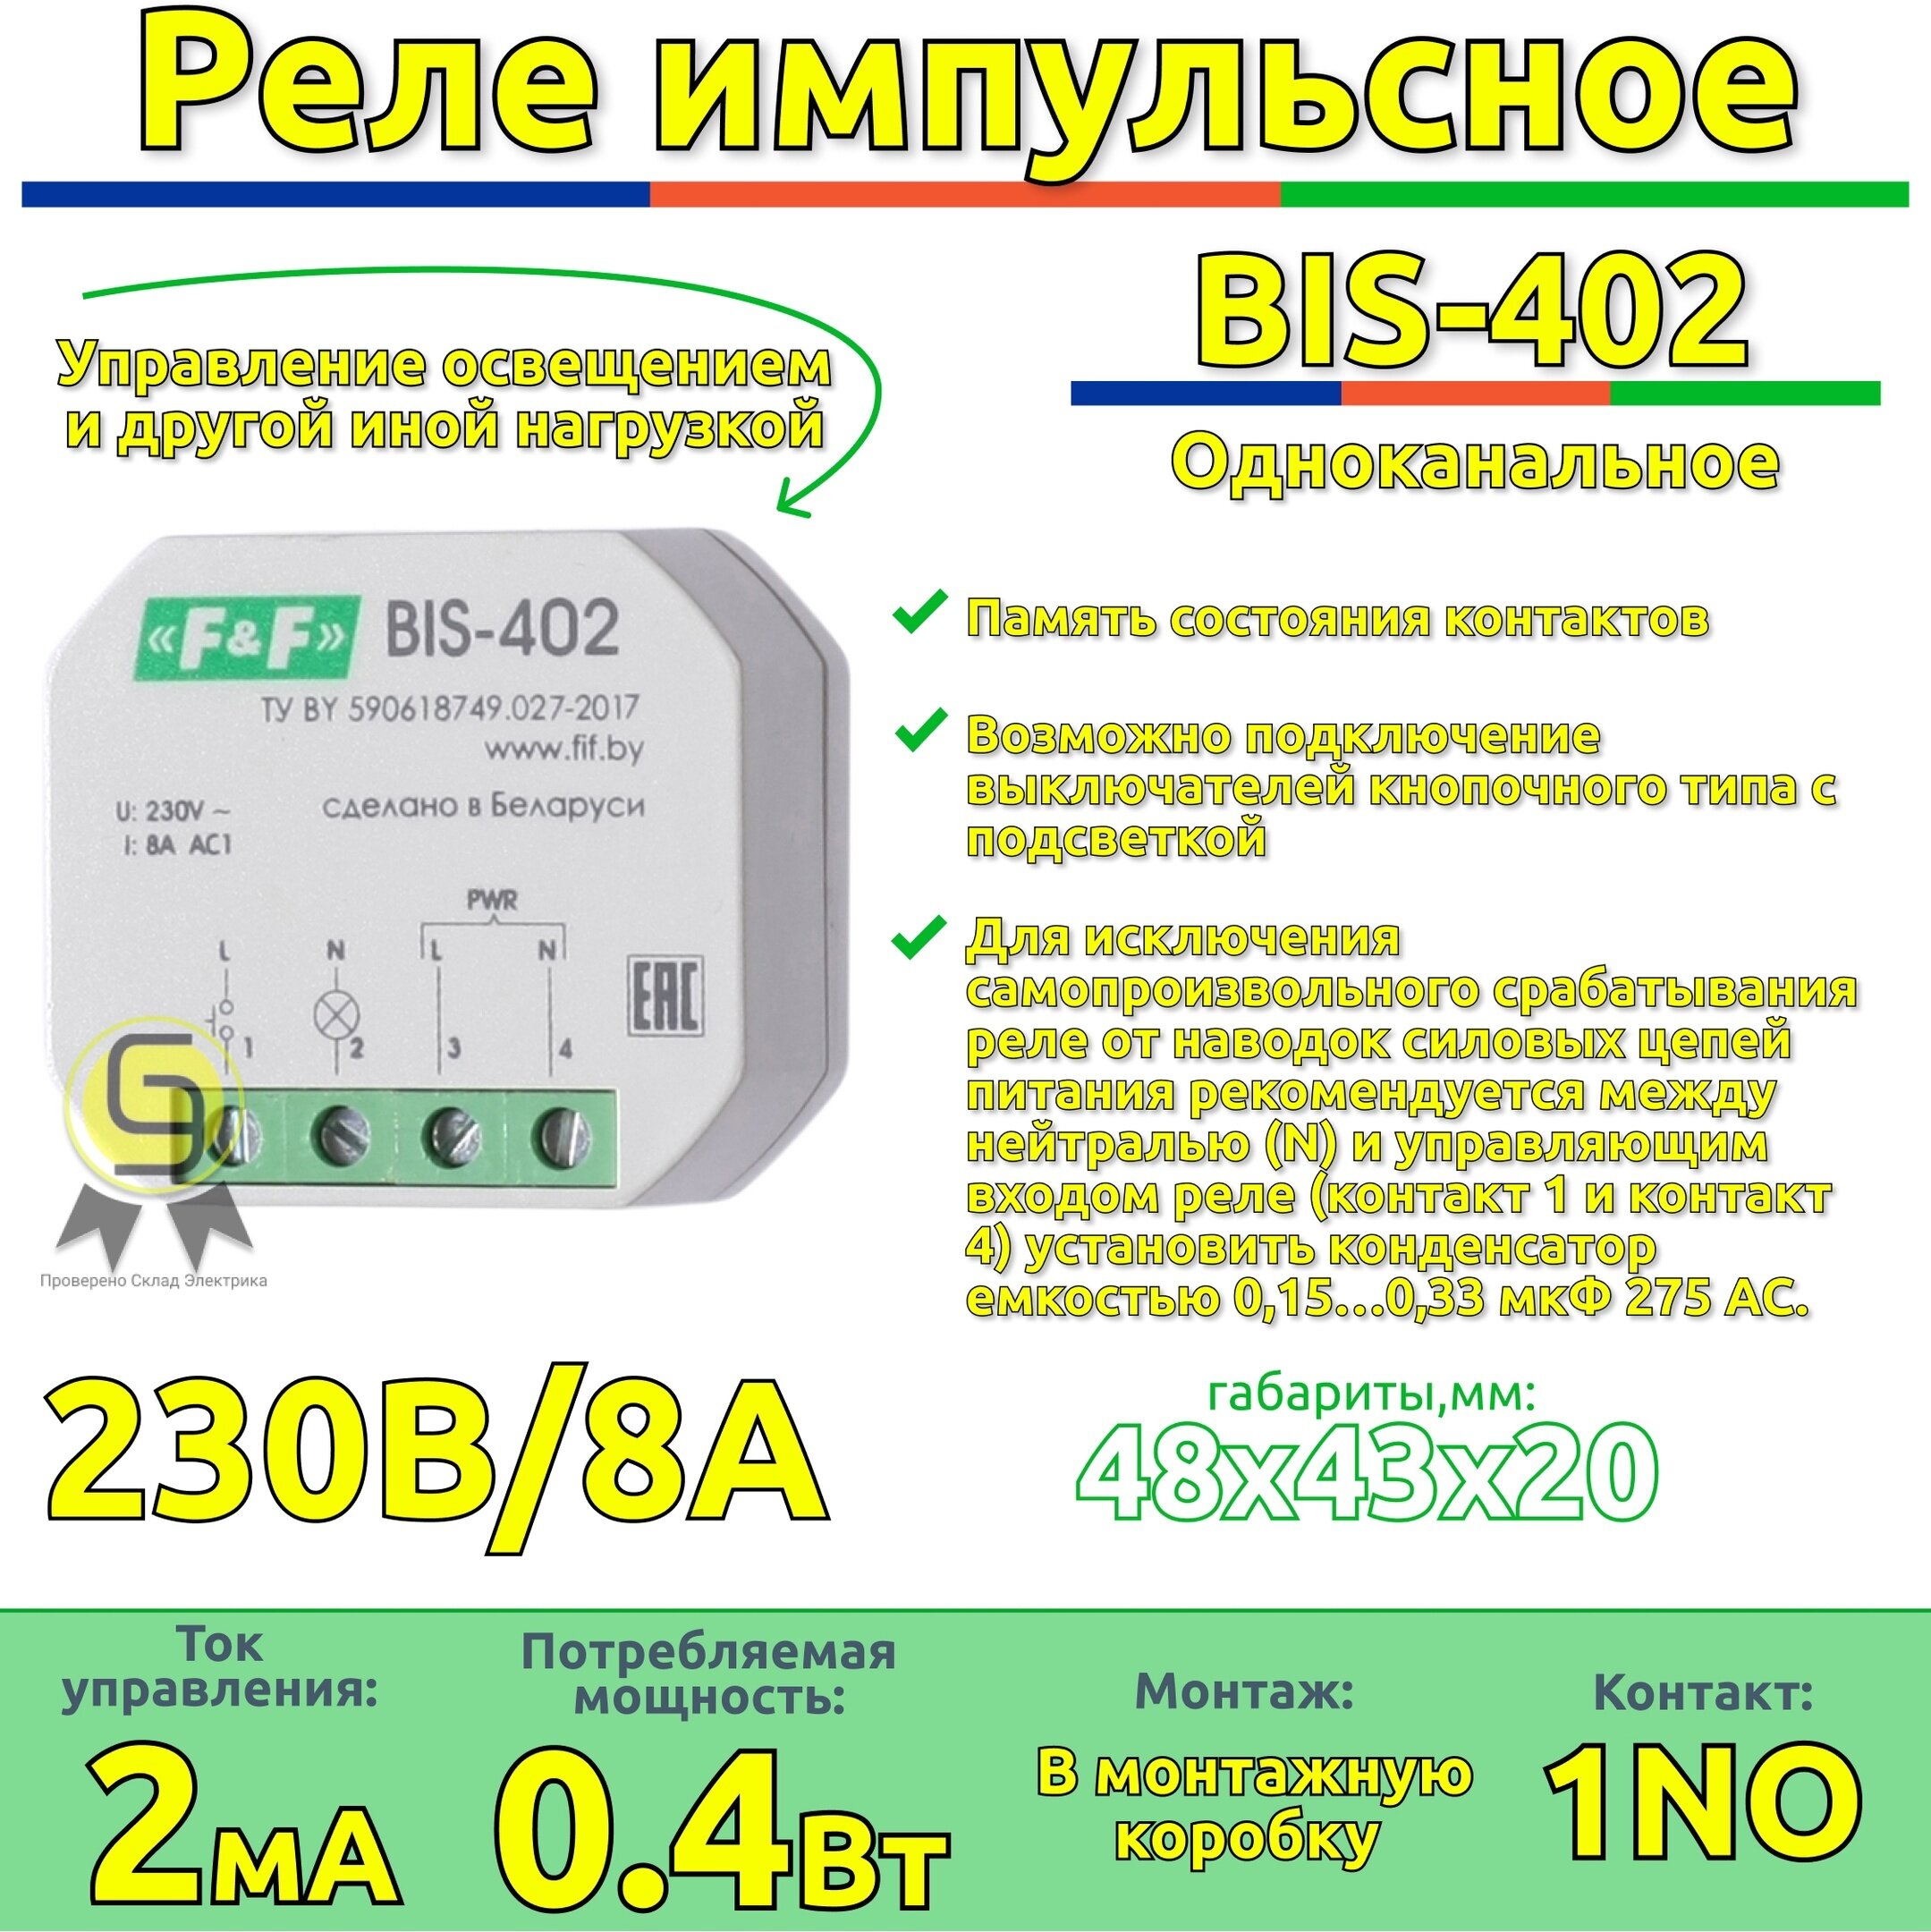 Реле импульсное BIS-402 Евроавтоматика f&f, 8А с функцией памяти состояния контактов (комплект 2шт)